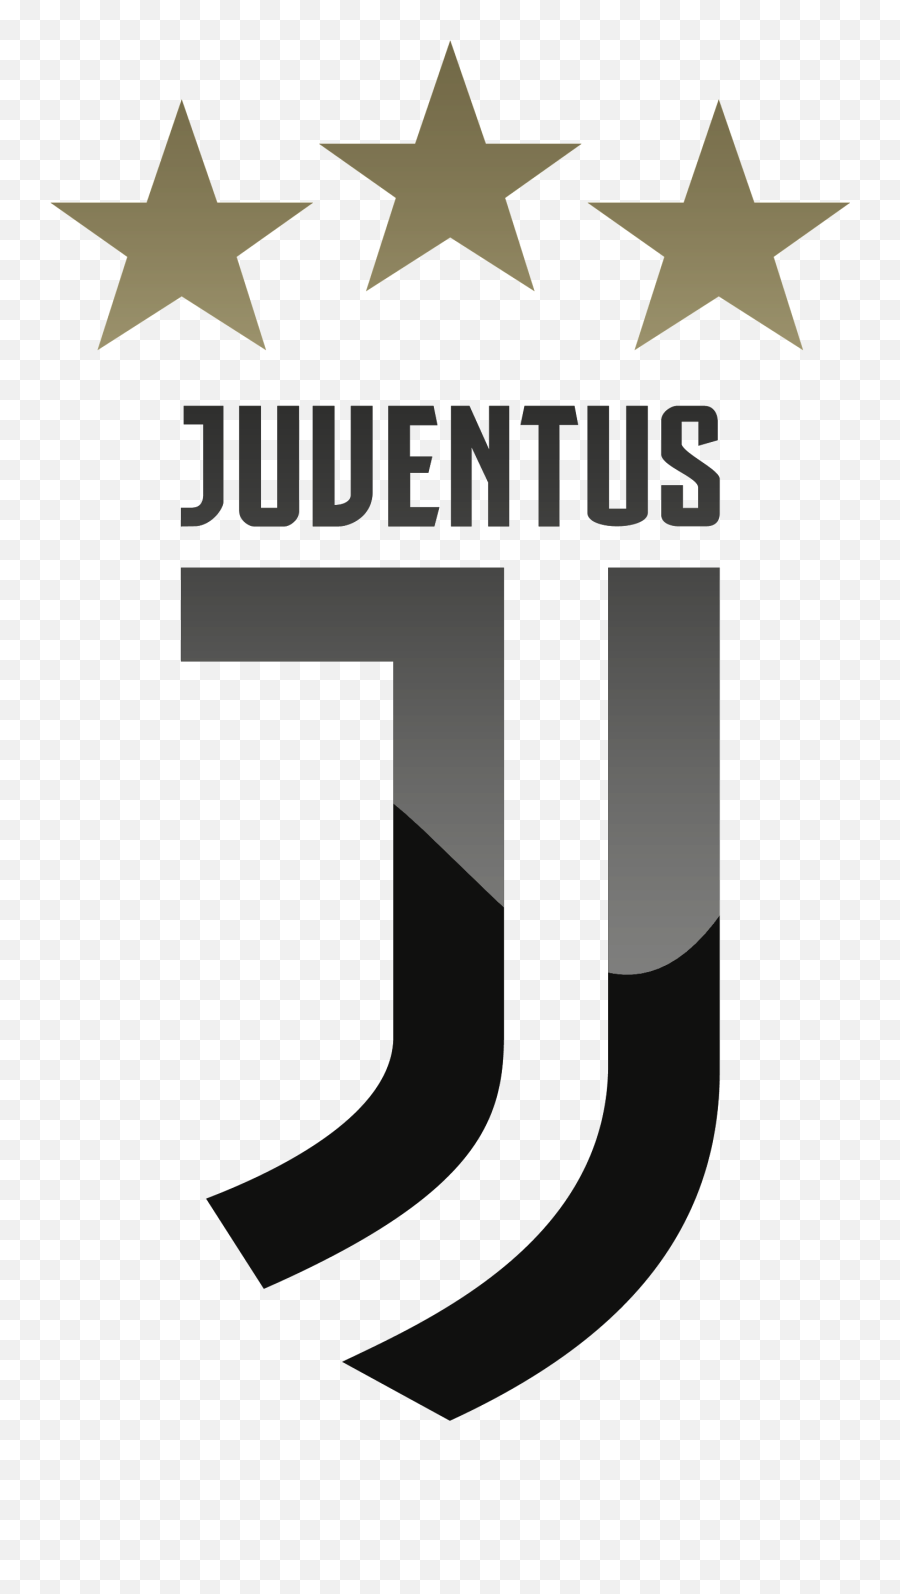 Juventus Fc Hd Logo - Dream League Soccer 2019 Juventus Logo Png,Hd Logo Png